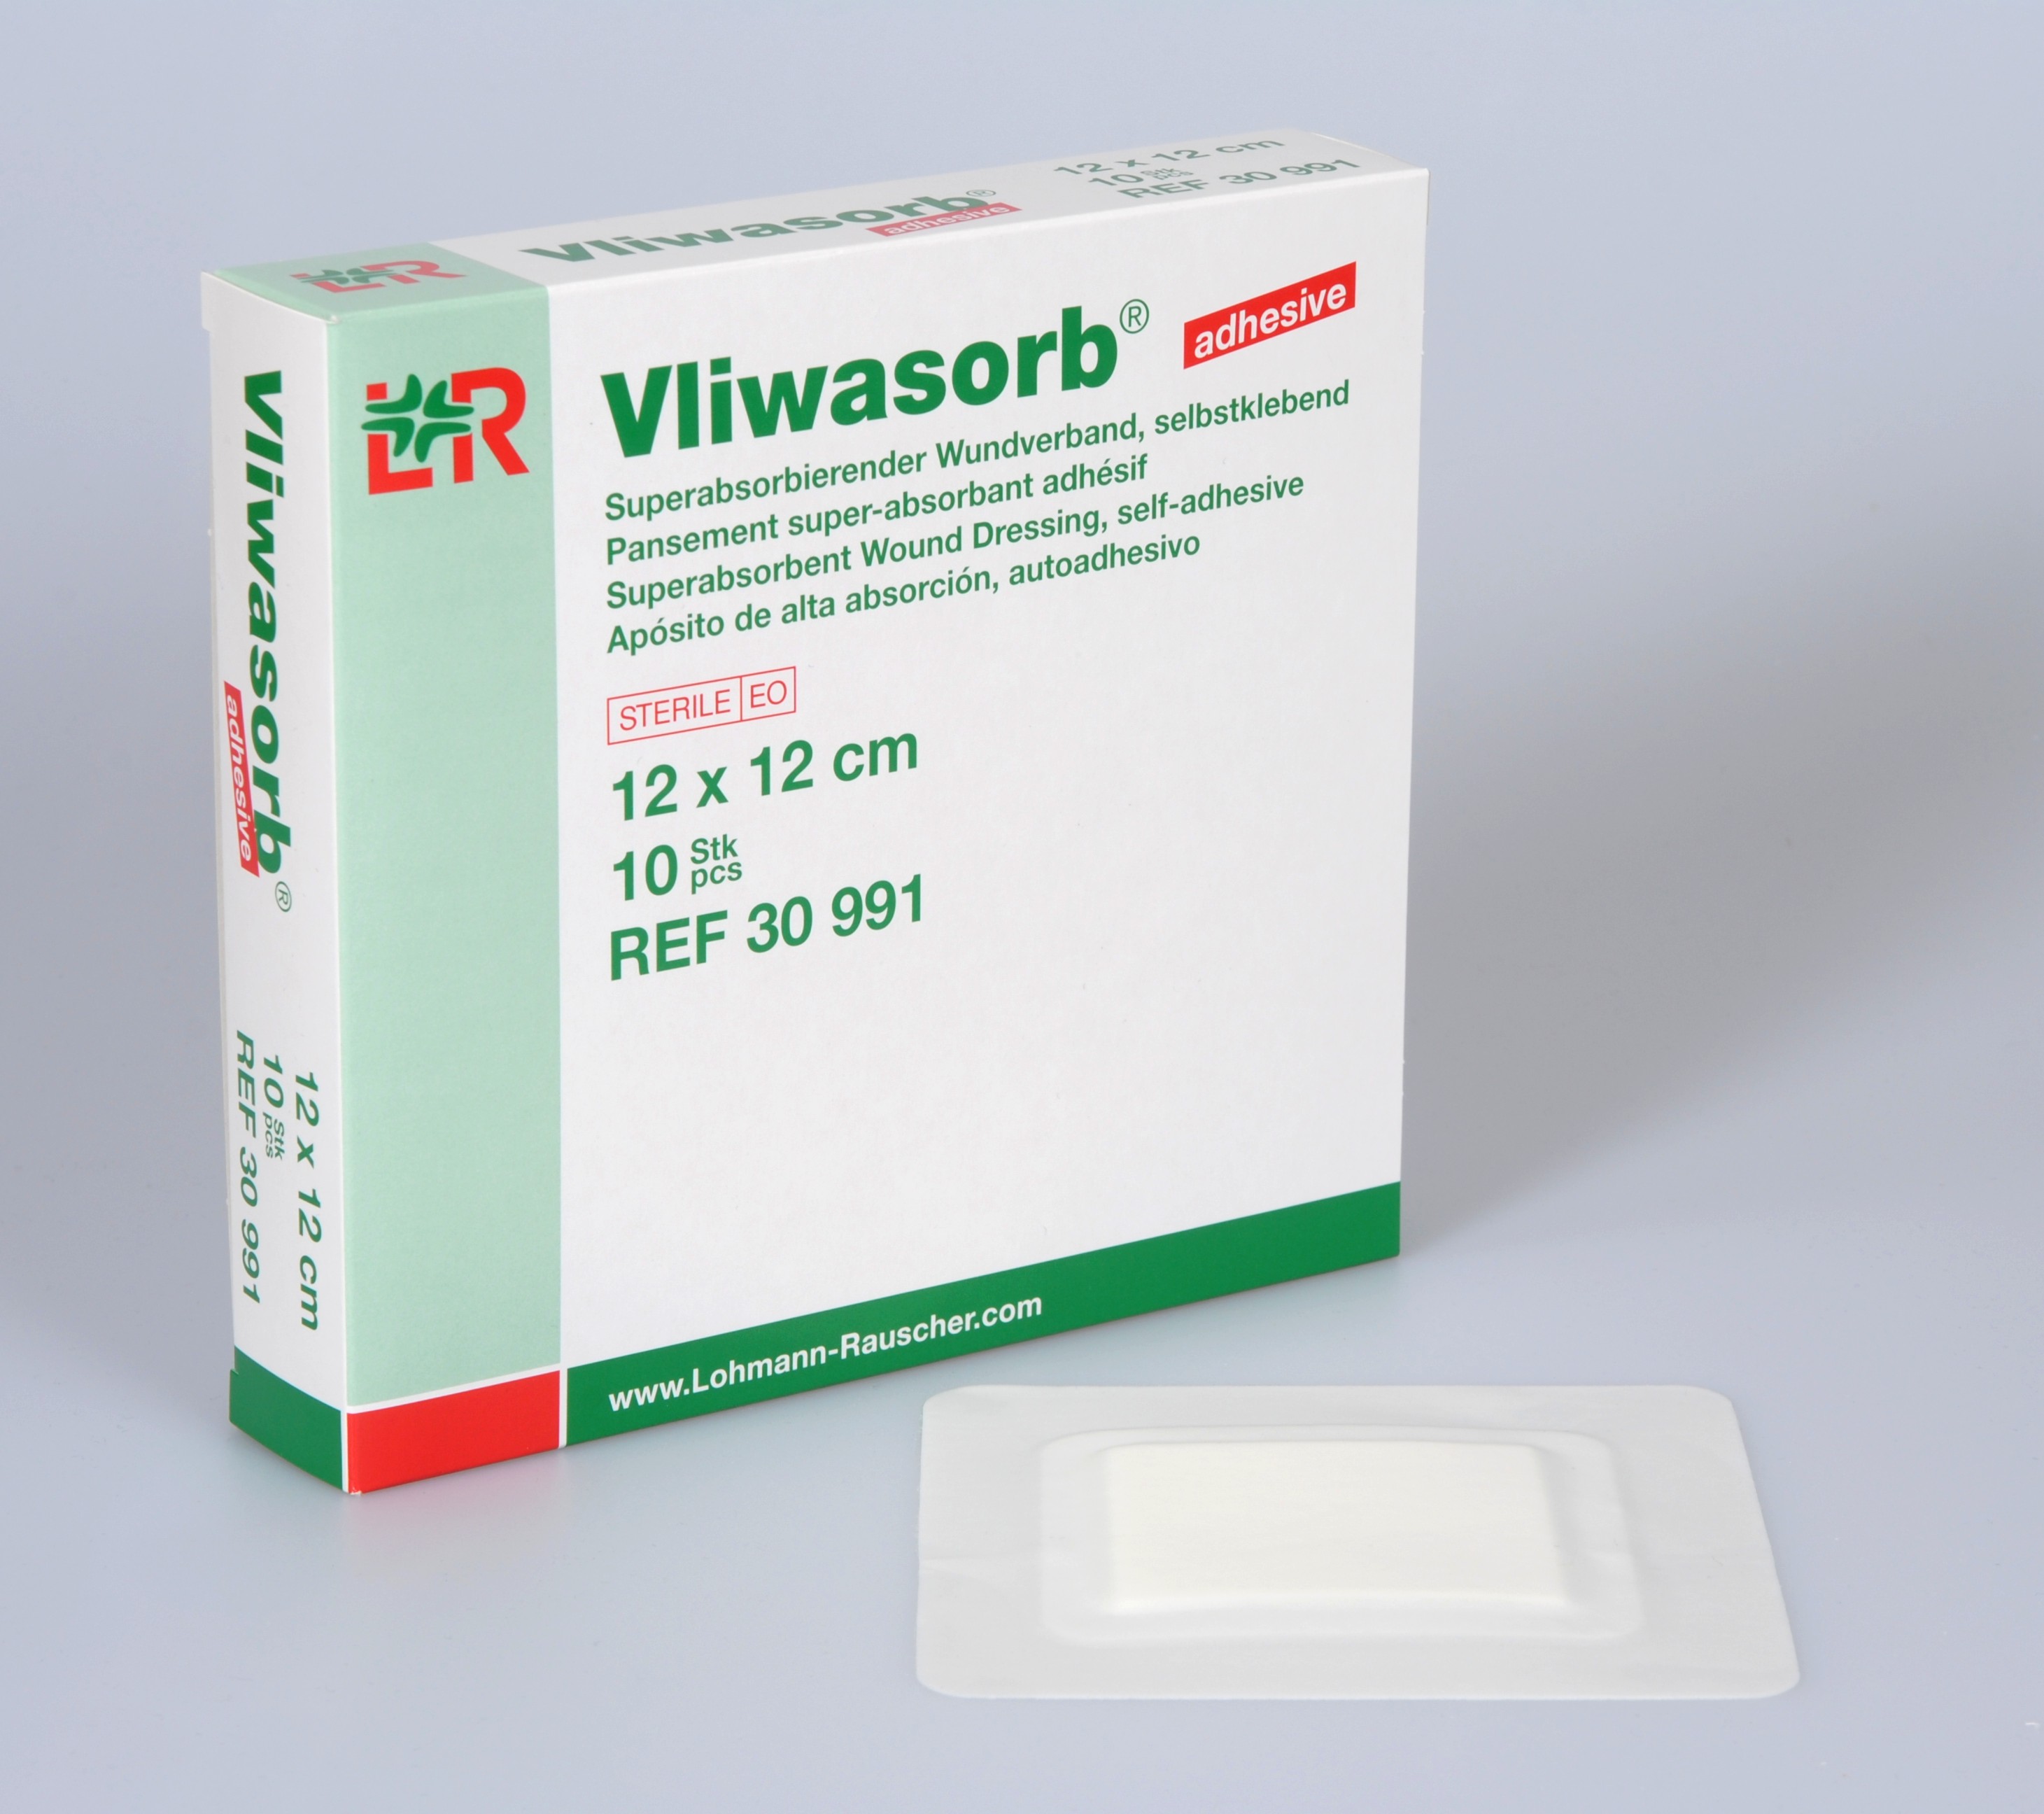 Vliwasorb adhesive 12x12cm, steril, 10 Stck., PZN 09245772